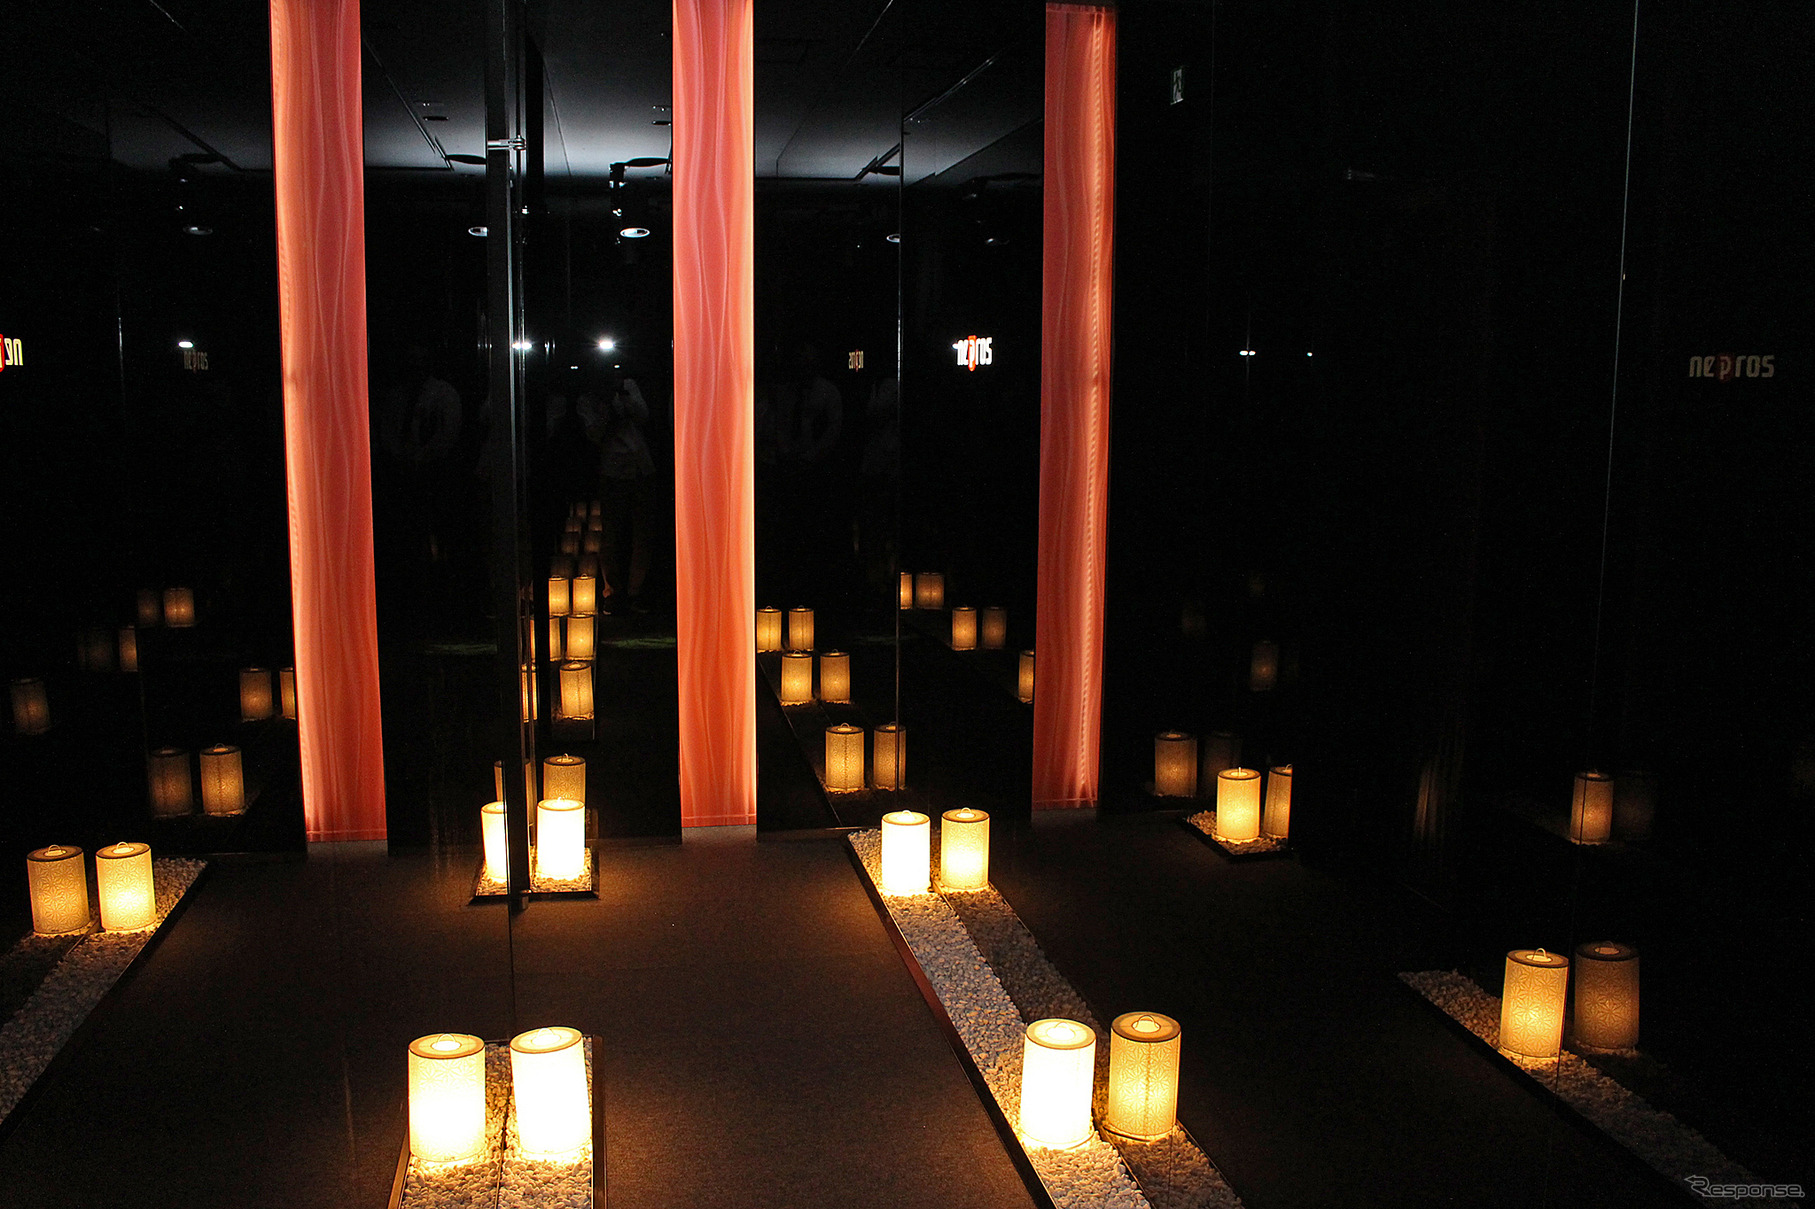 まさに京都、不思議空間を演出するネプロスミュージアム